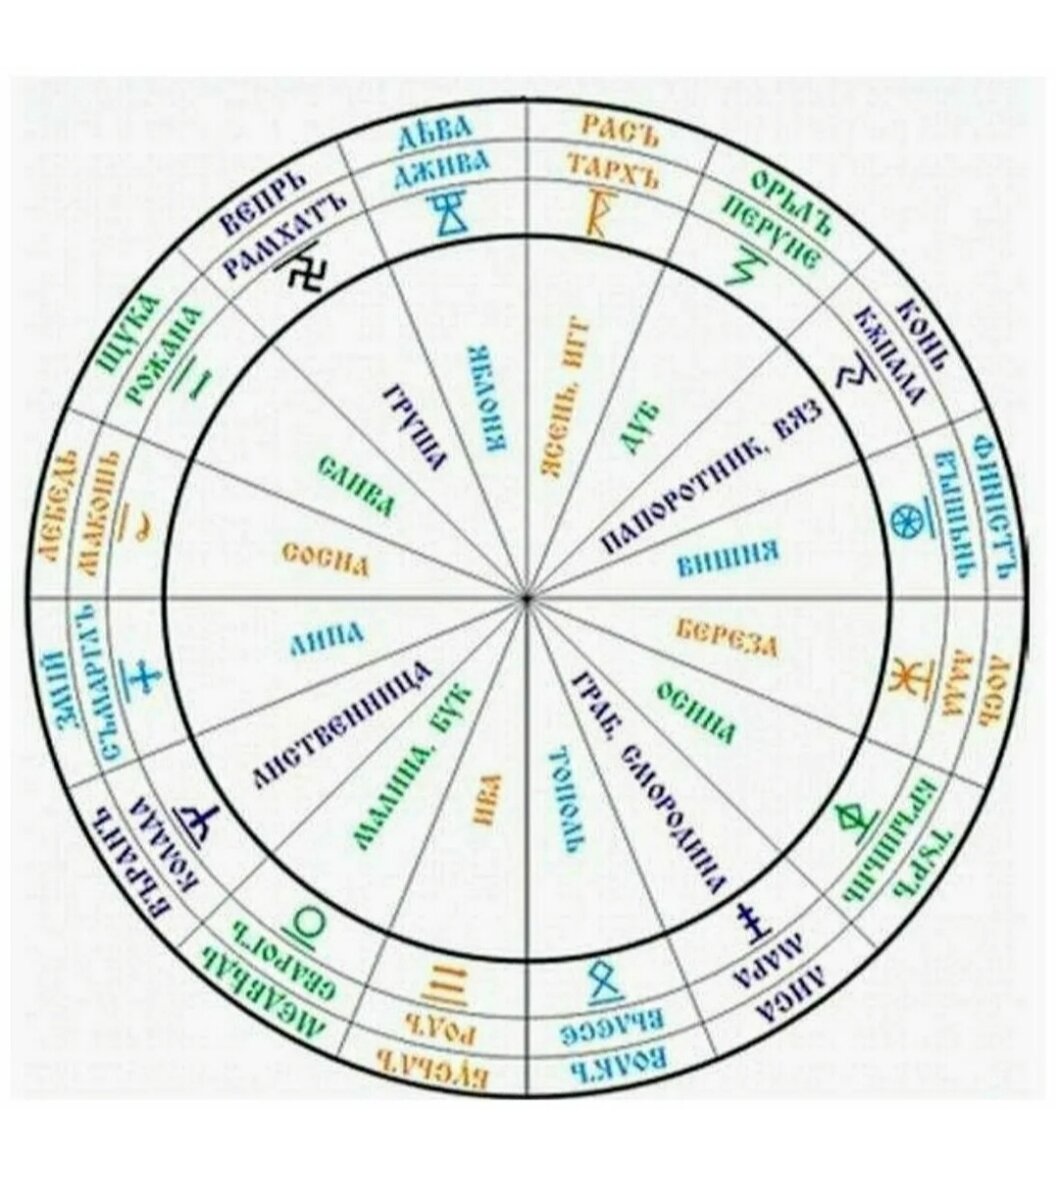 Славянский календарь зодиаков